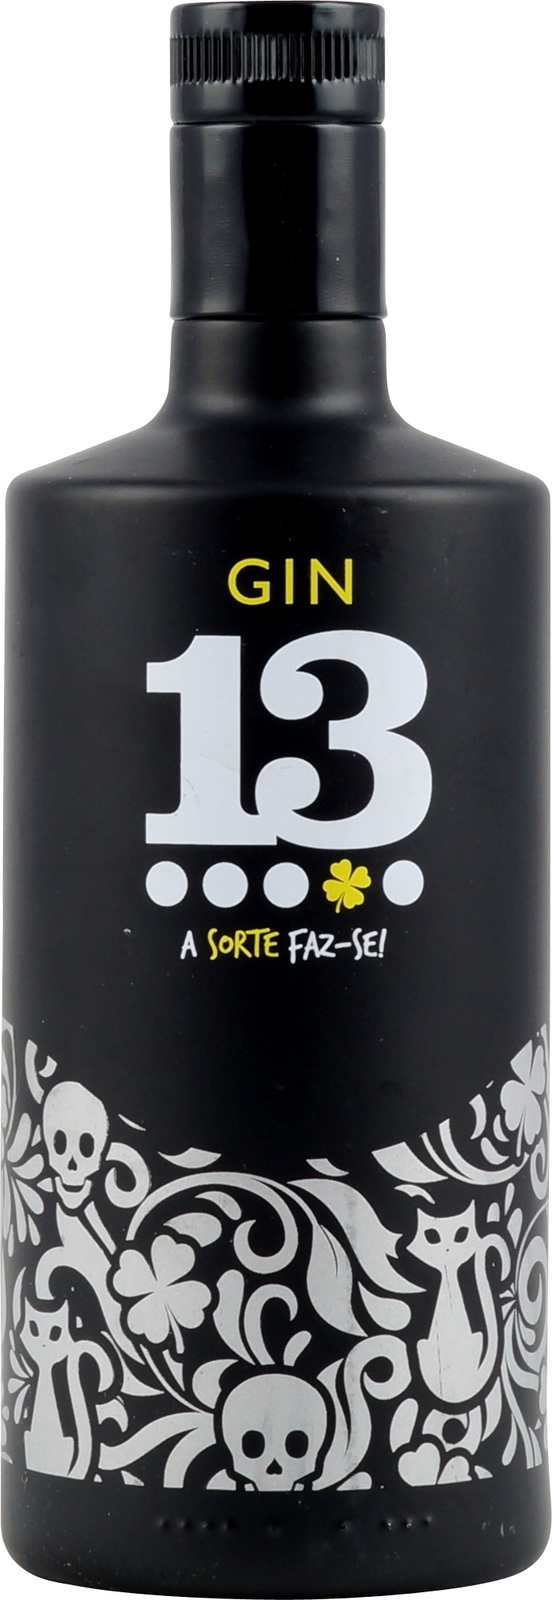 Gin 13 aus Portugal hier im Onlineshop verfügbar | Gin